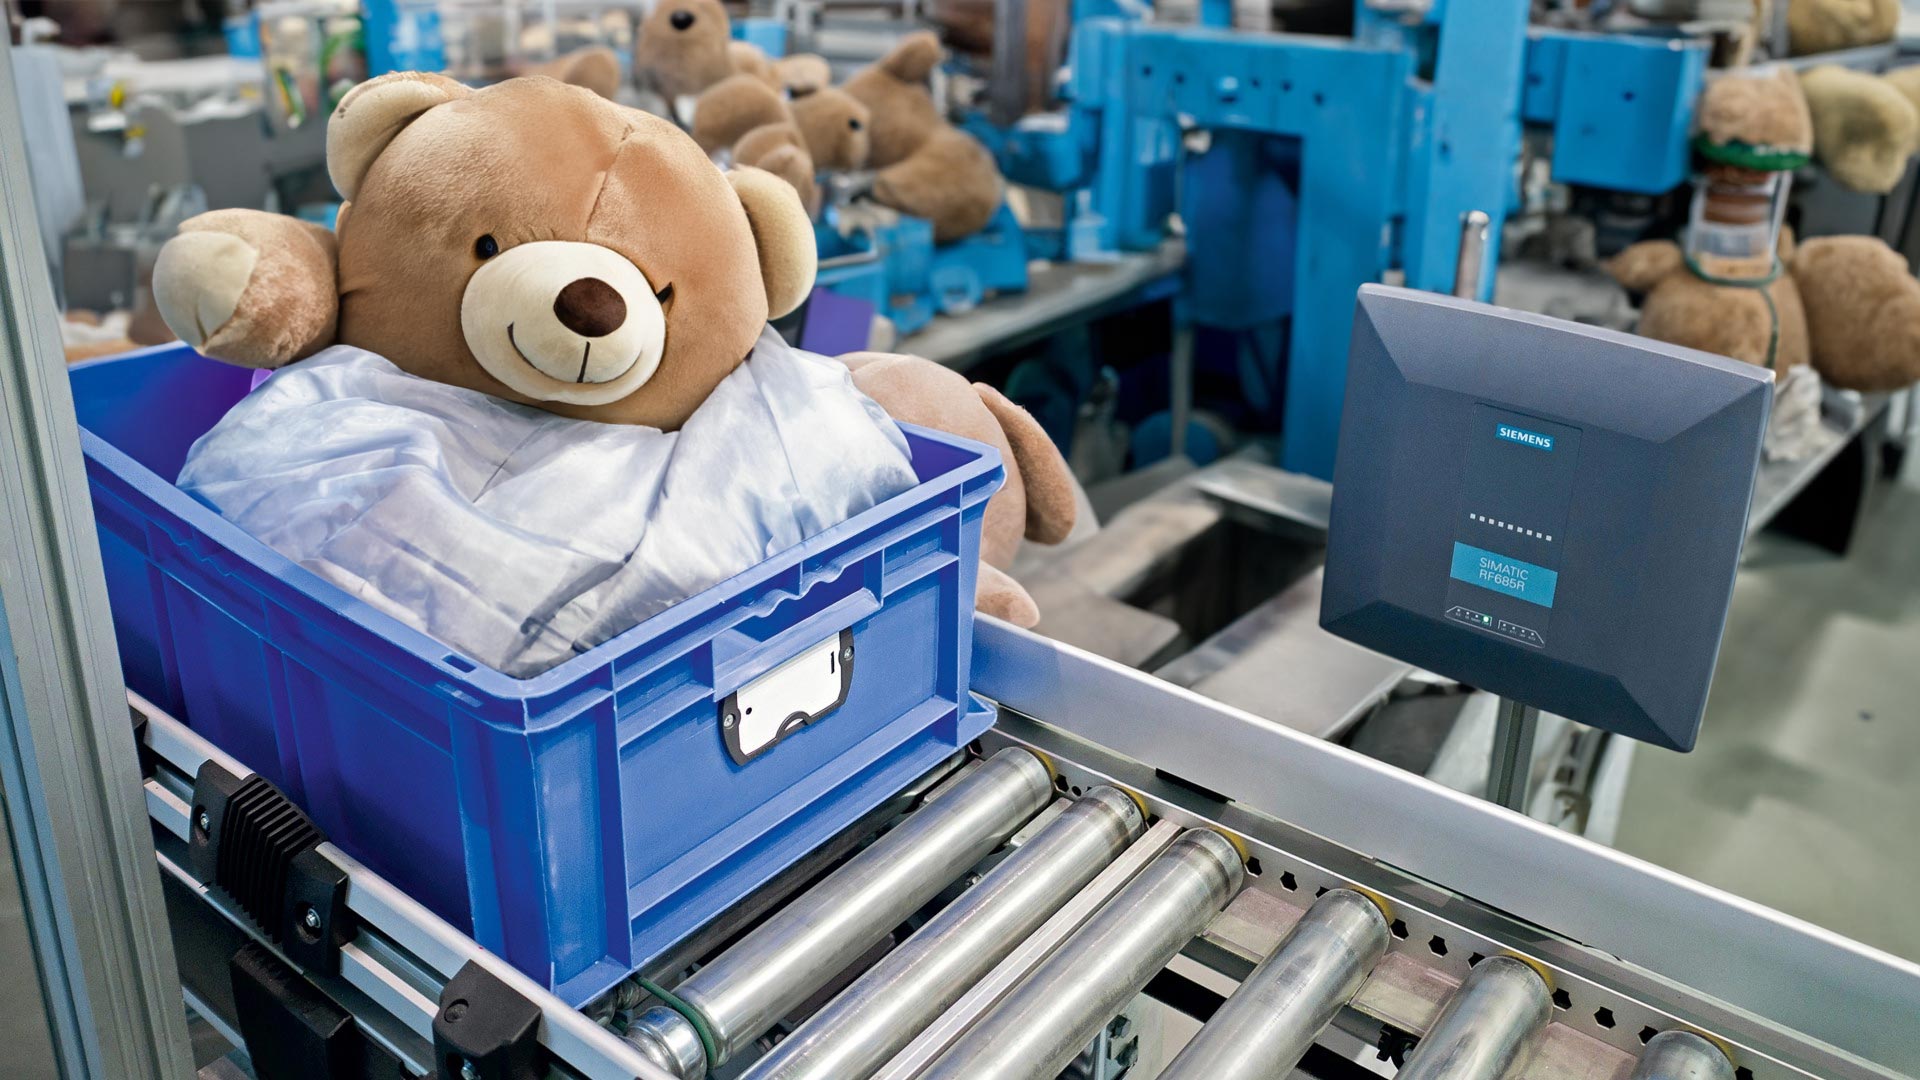 rfid_teddy_bear_factory